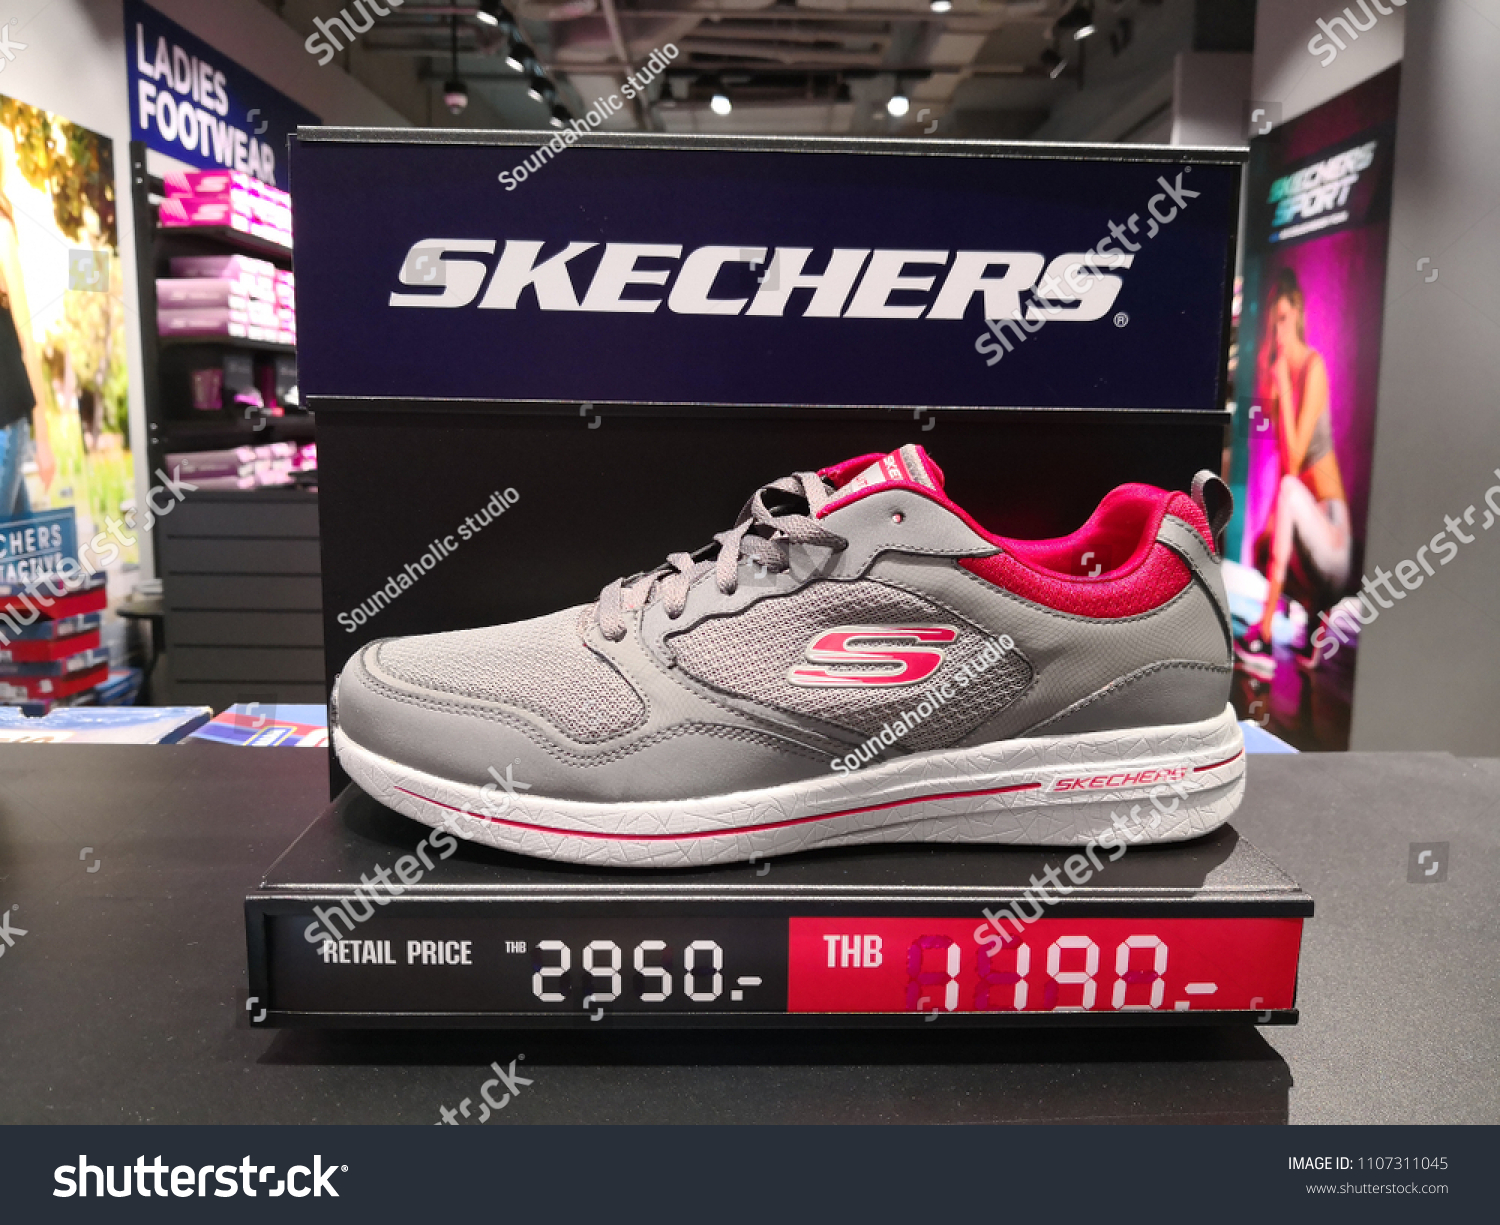 skechers thailand sale